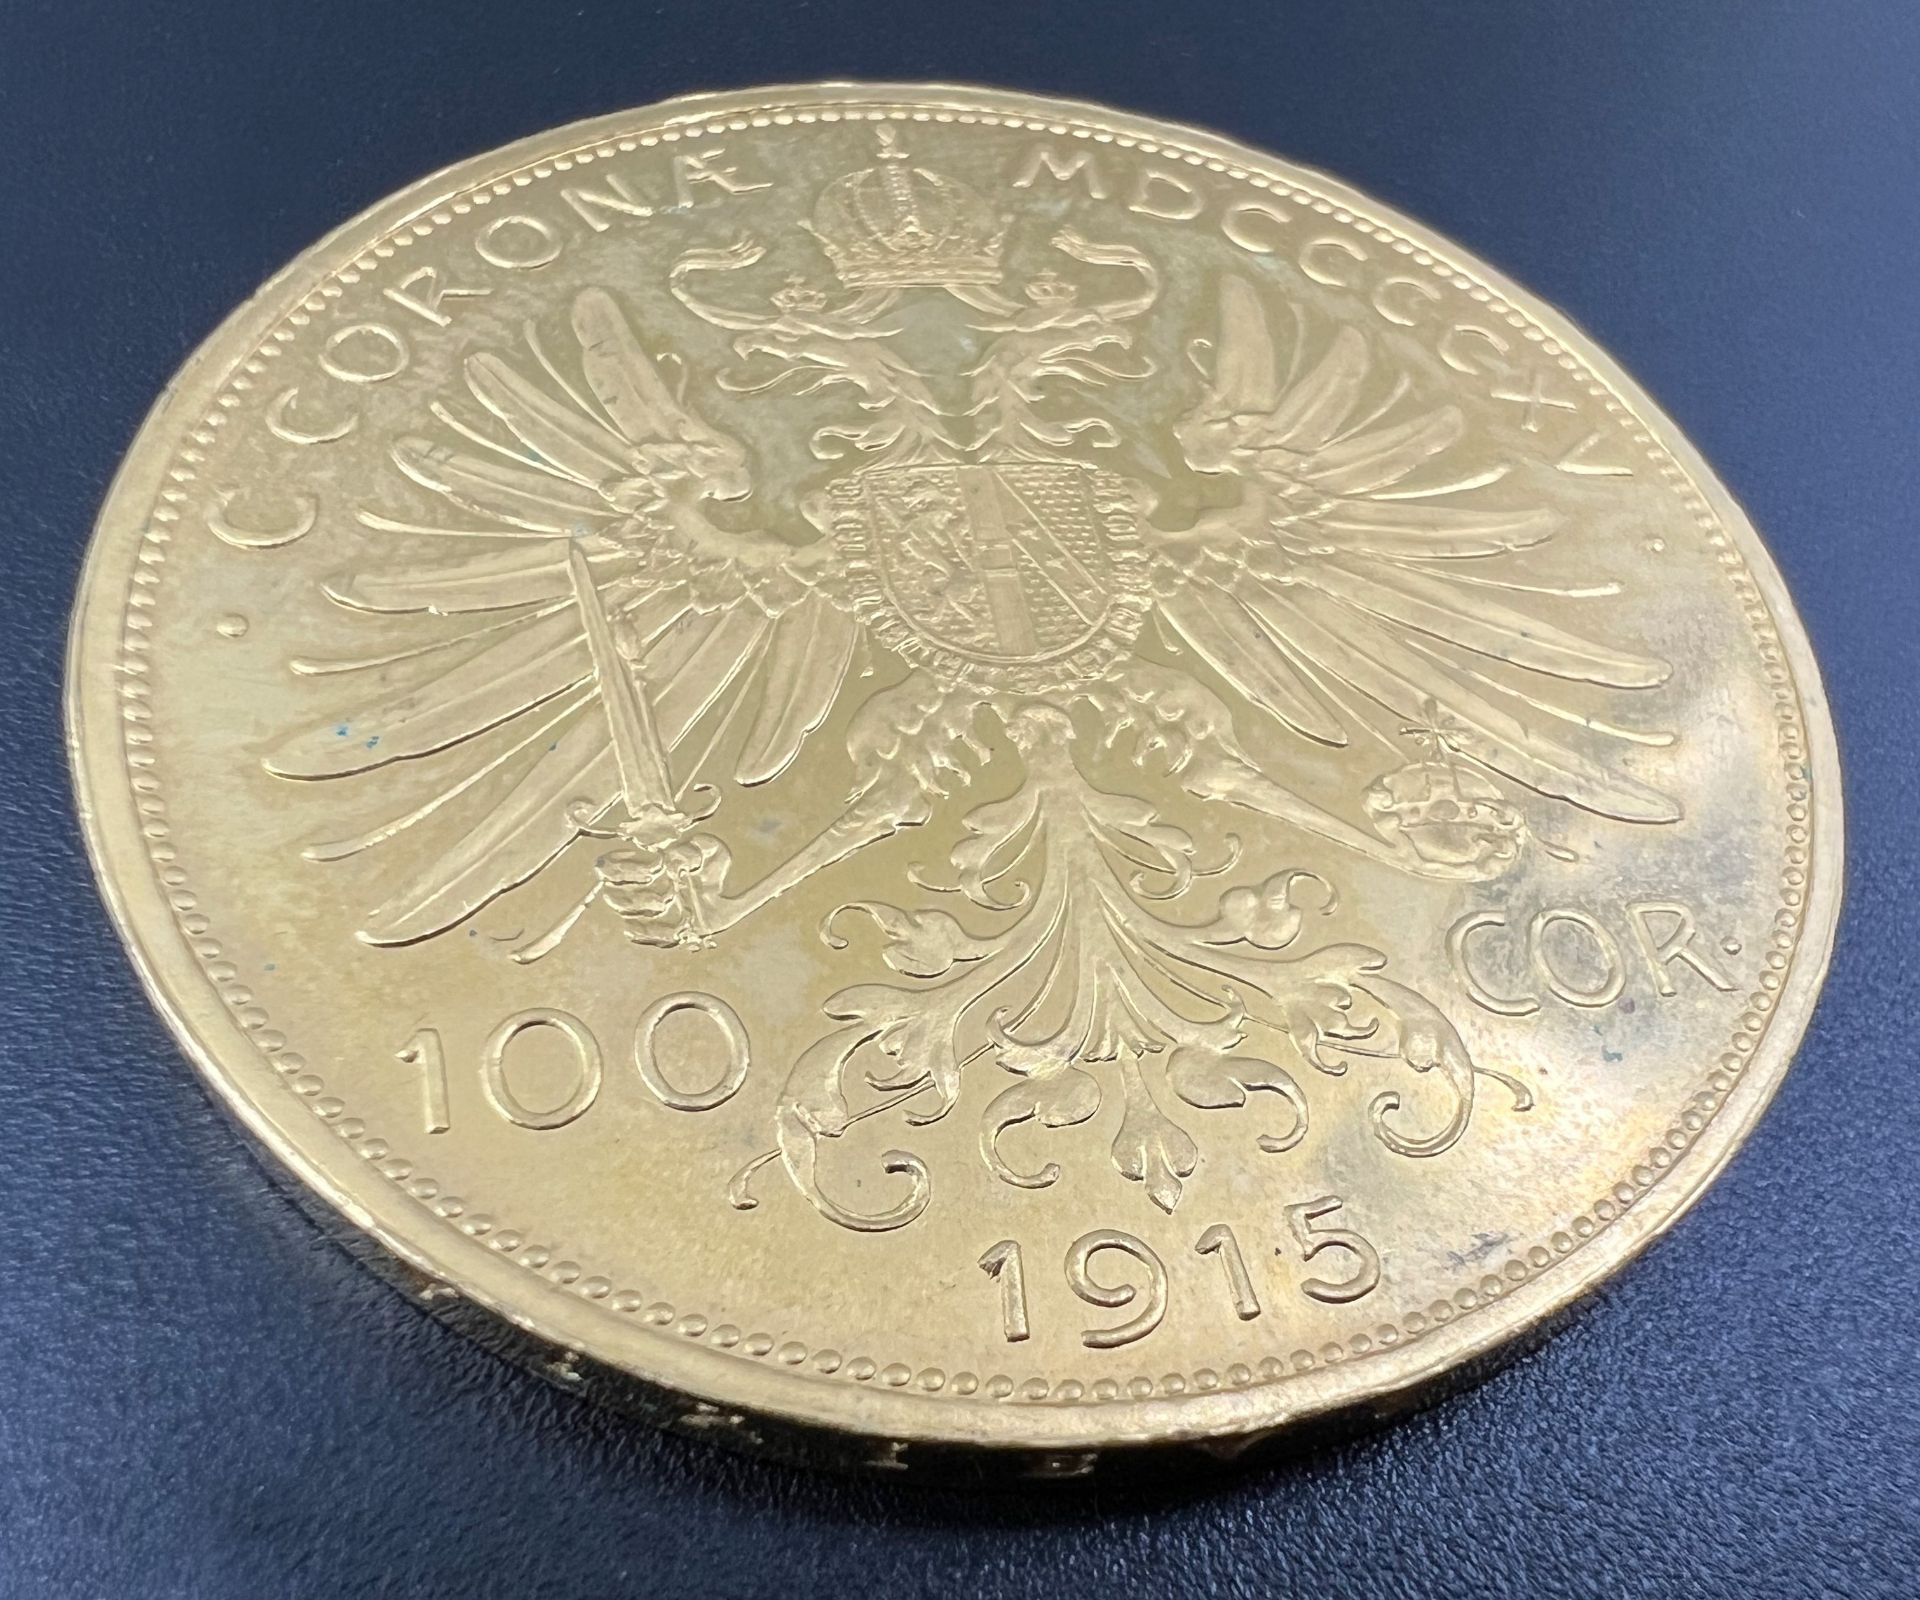 Goldmünze 100 Kronen "Franz Joseph I.". Österreich 1915. 900 Gold. - Bild 4 aus 6